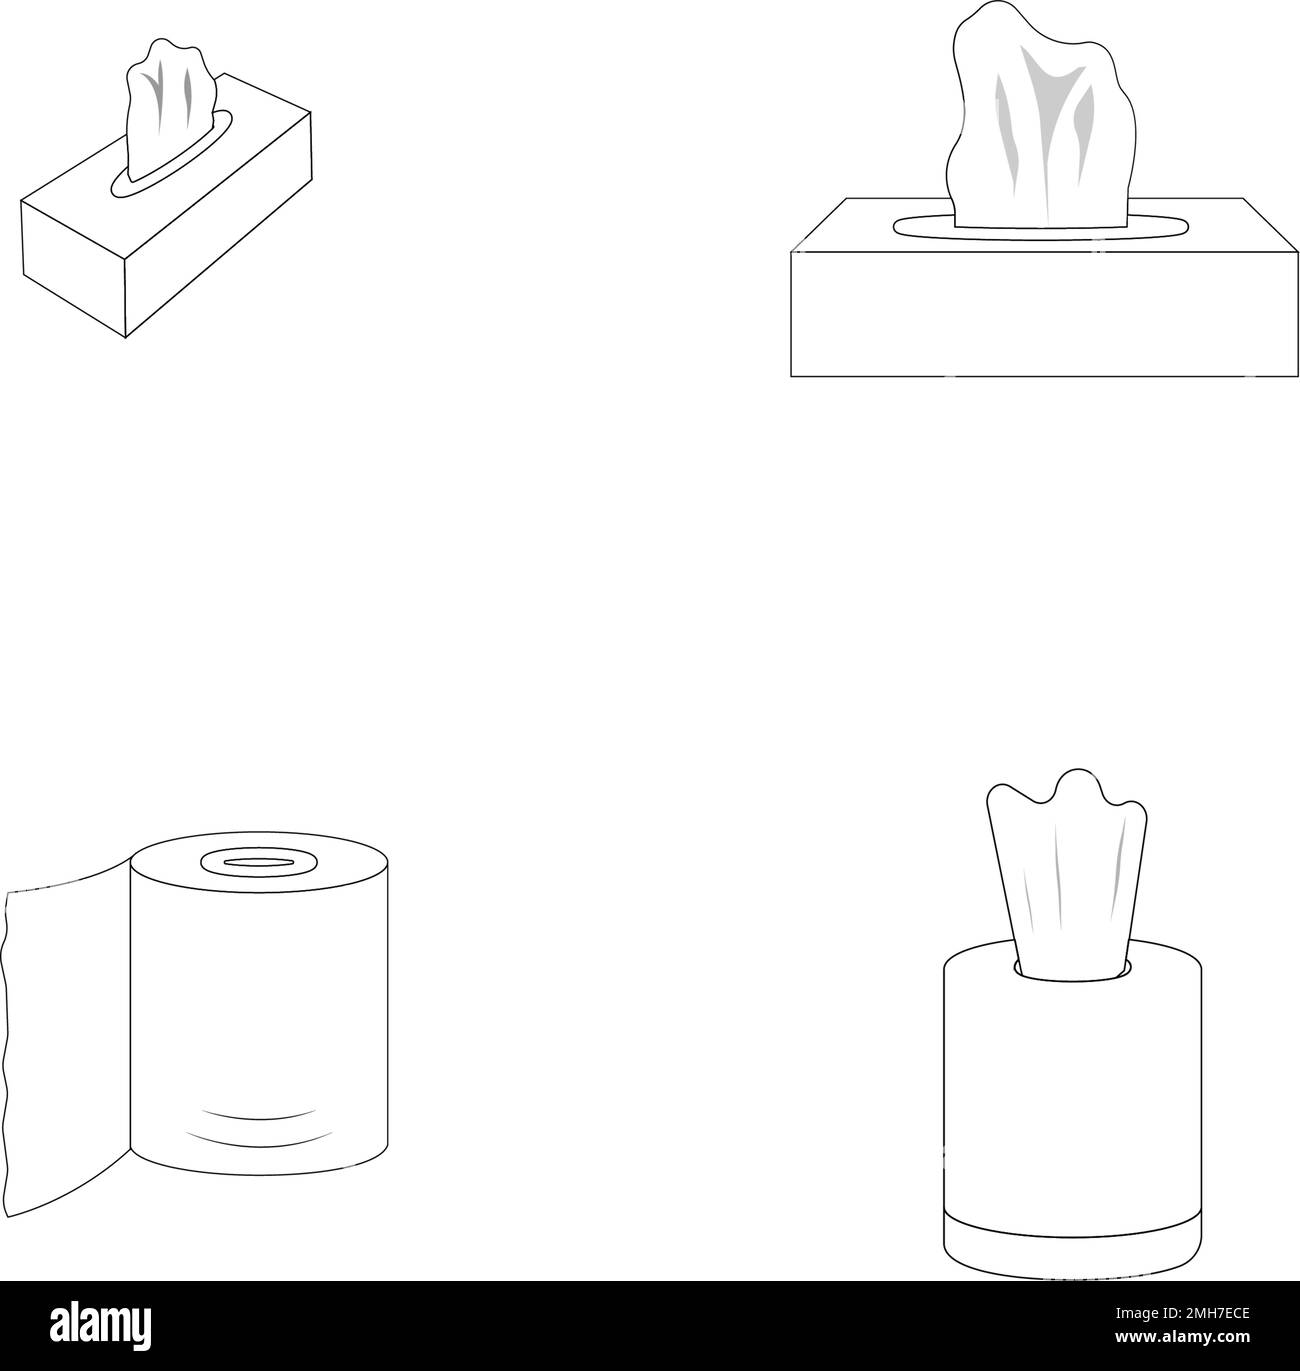 tissue logo stock illustration design Stock Vector